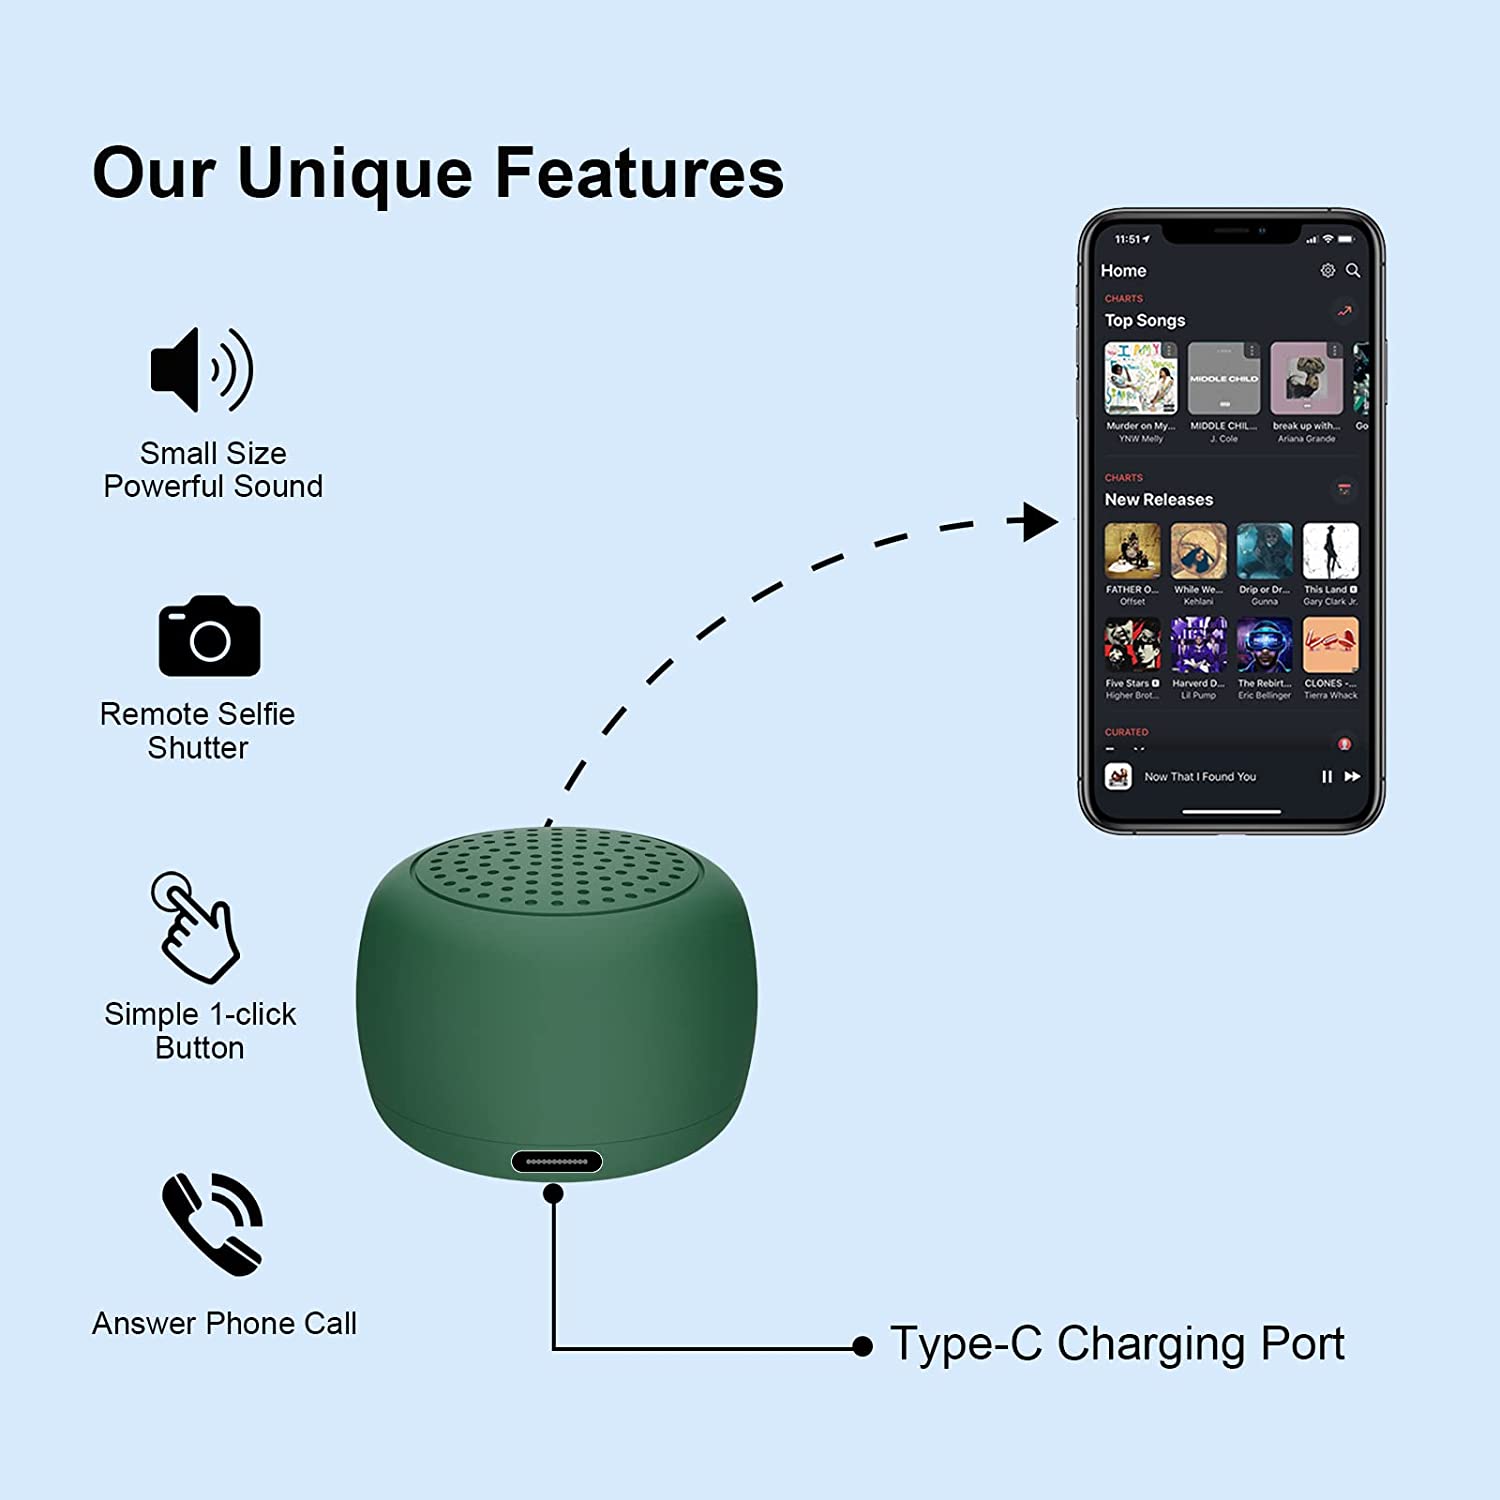 Momoho Bluetooth Speaker